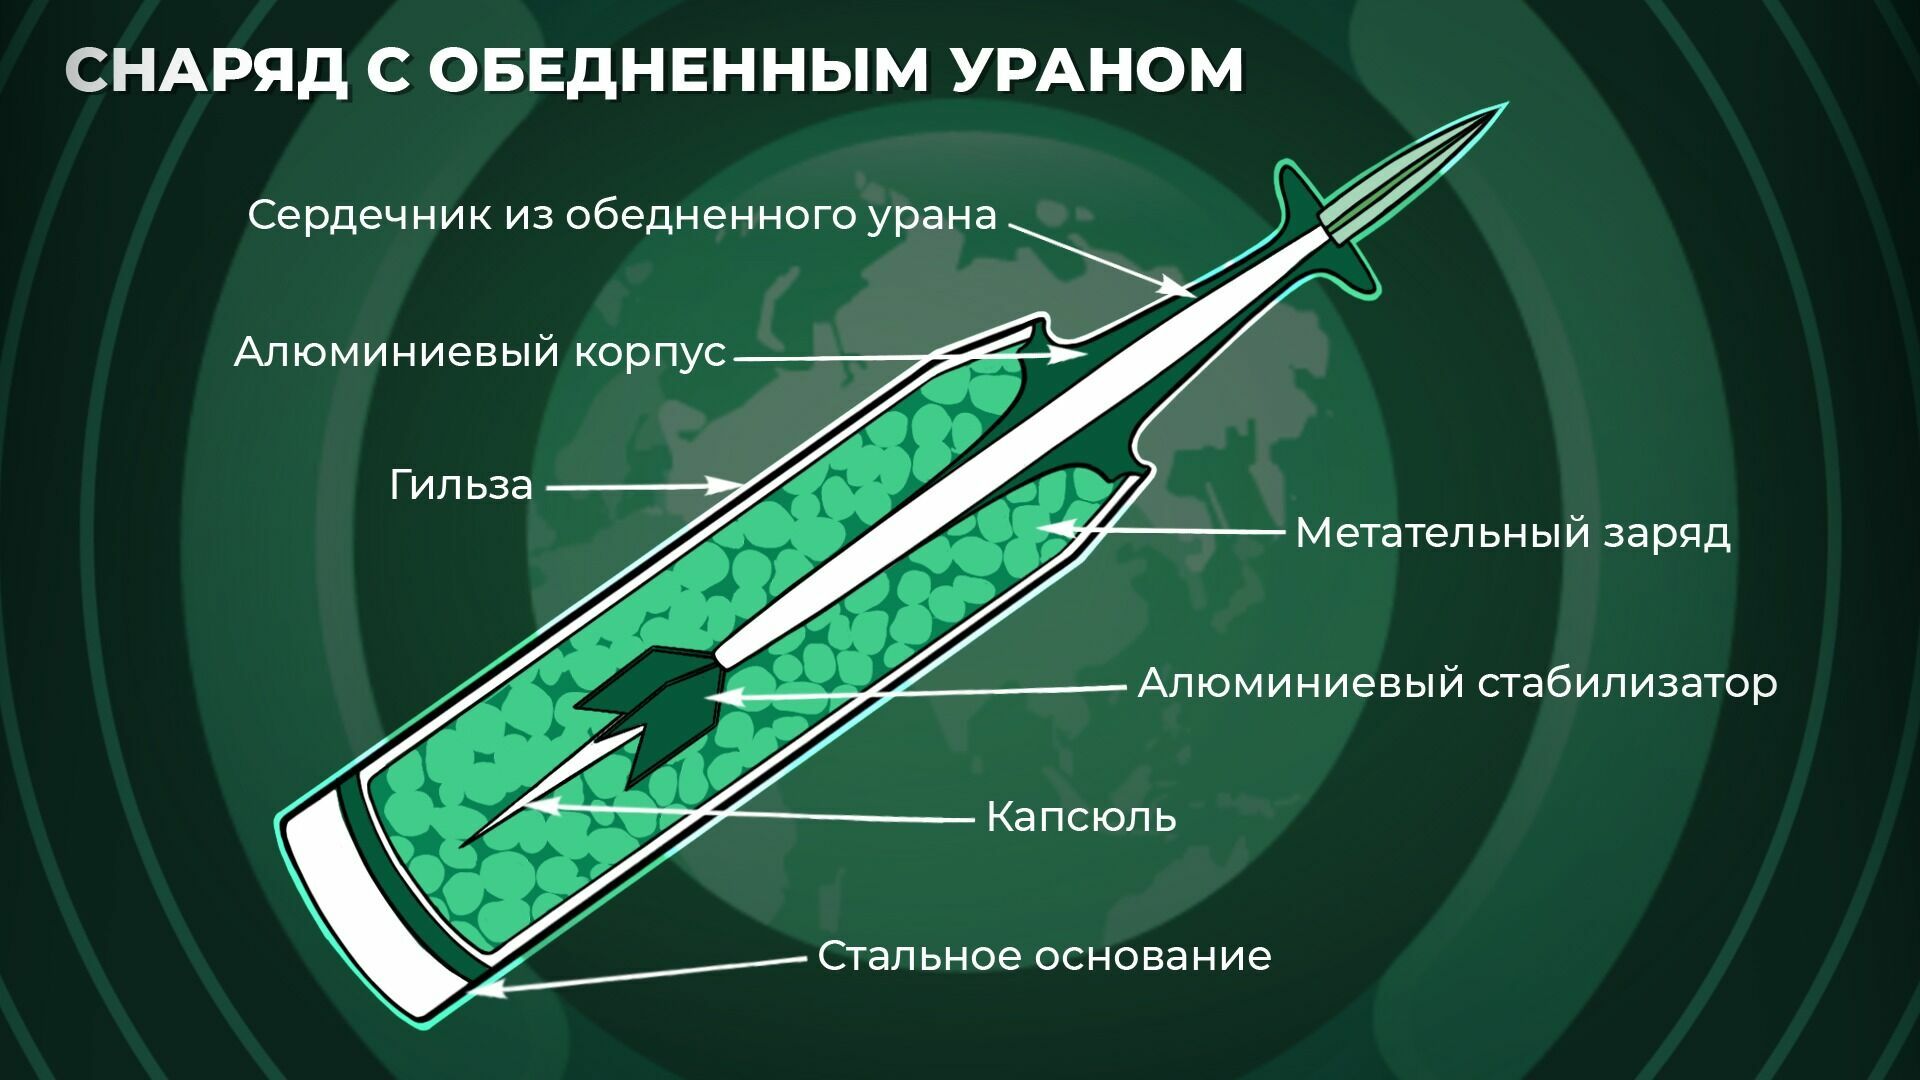 Обедненный уран на украине. Урановые снаряды. Обеднённый Уран. Боеприпасы с обедненным ураном. Боеприпасы с урановым сердечником.